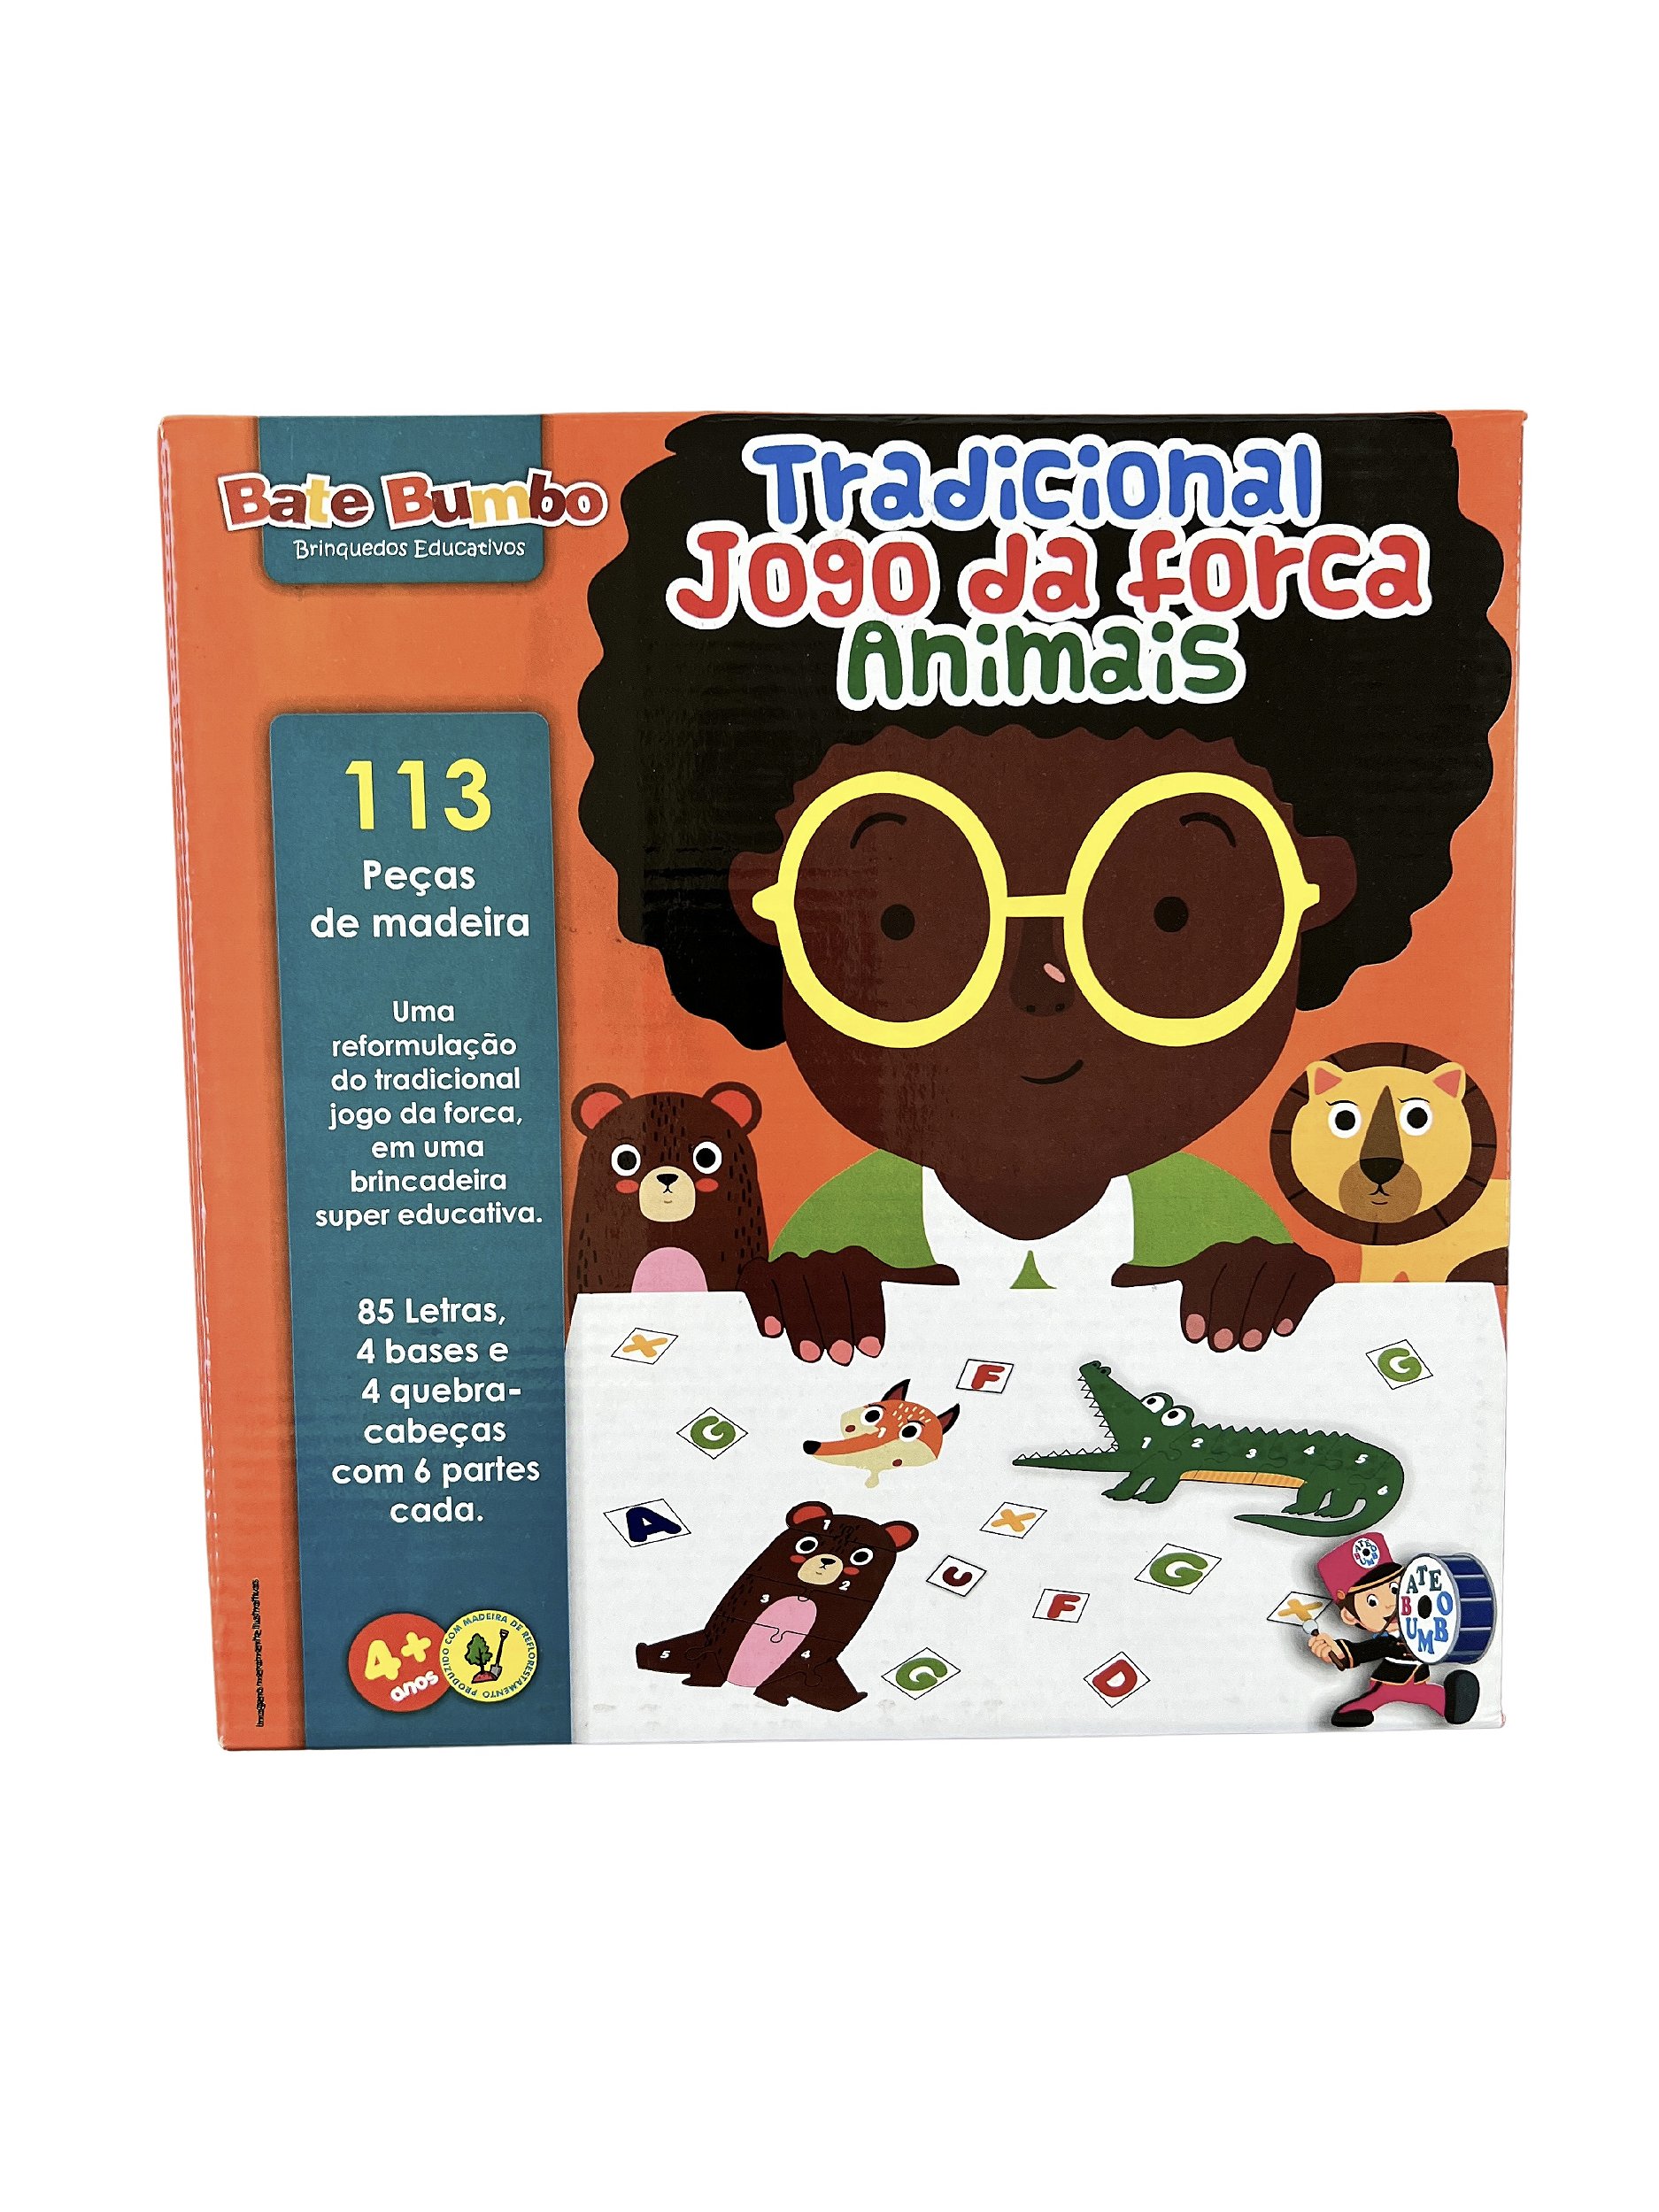 Jogo Da Forca Brinquedo Educativo Palavras Pais & Filhos Original